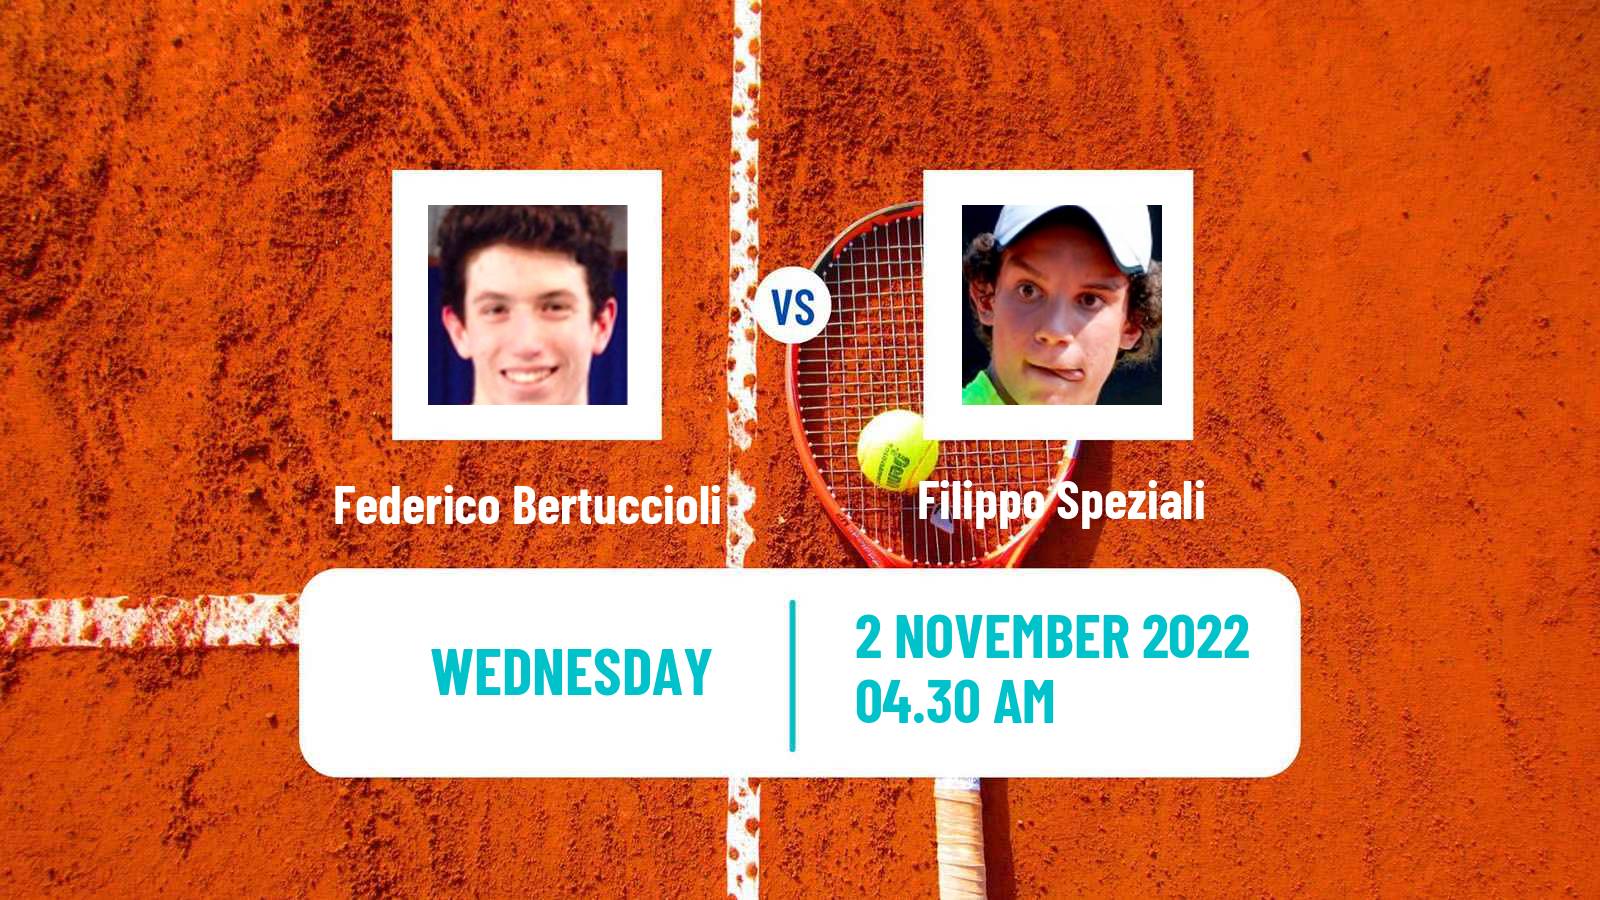 Tennis ITF Tournaments Federico Bertuccioli - Filippo Speziali